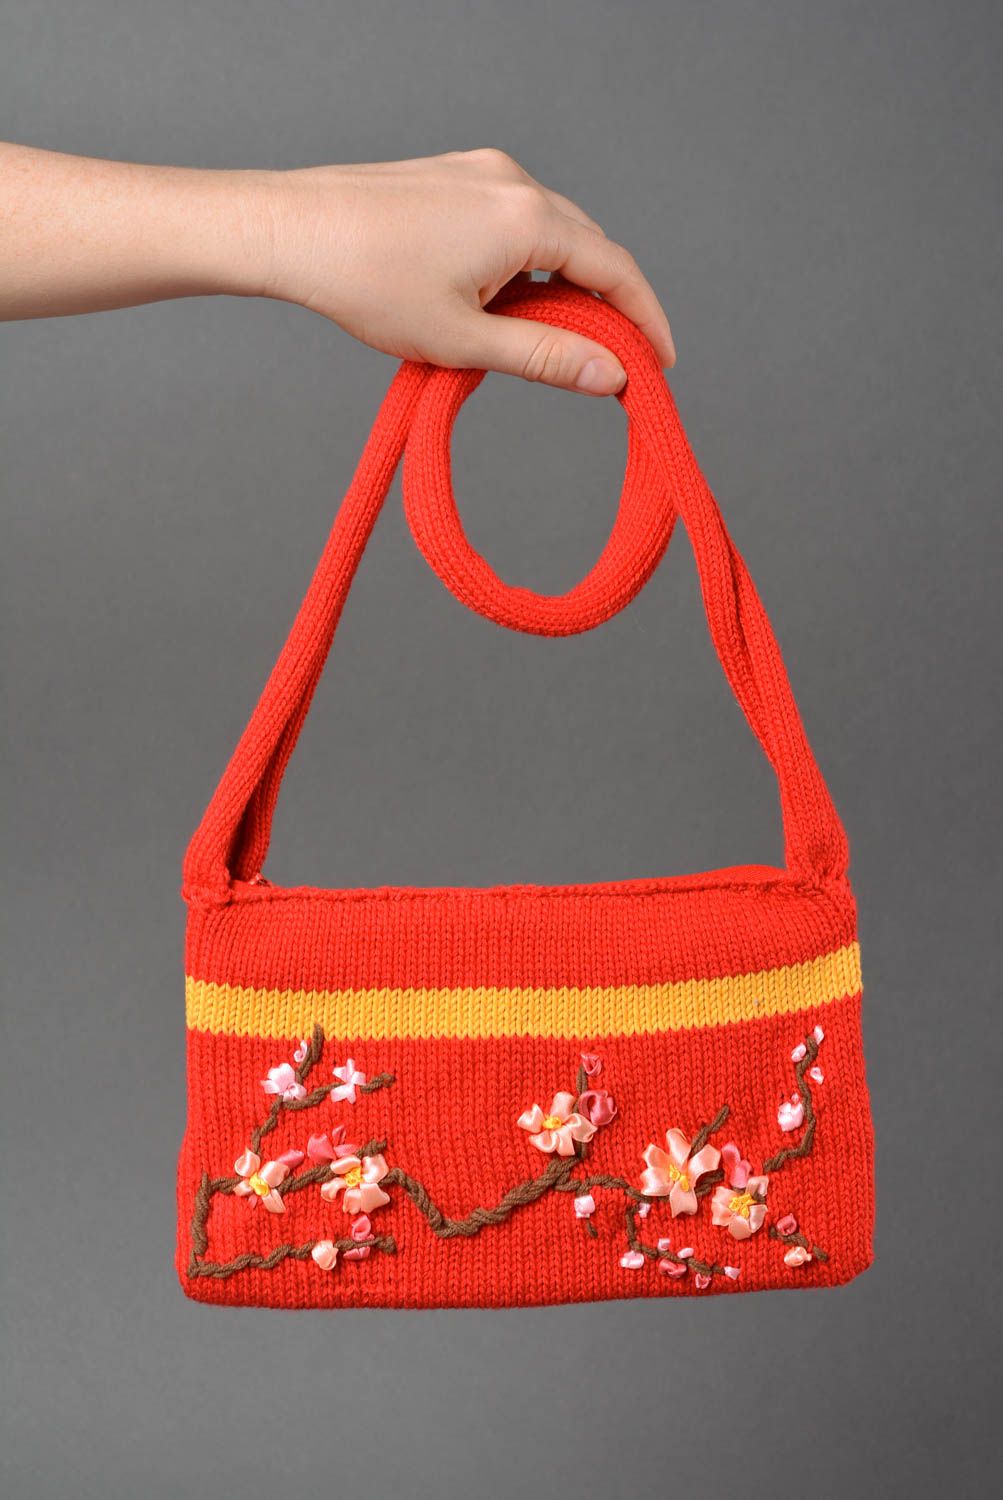 Sac tricoté fait main Accessoire femme au crochet rouge Cadeau original photo 3